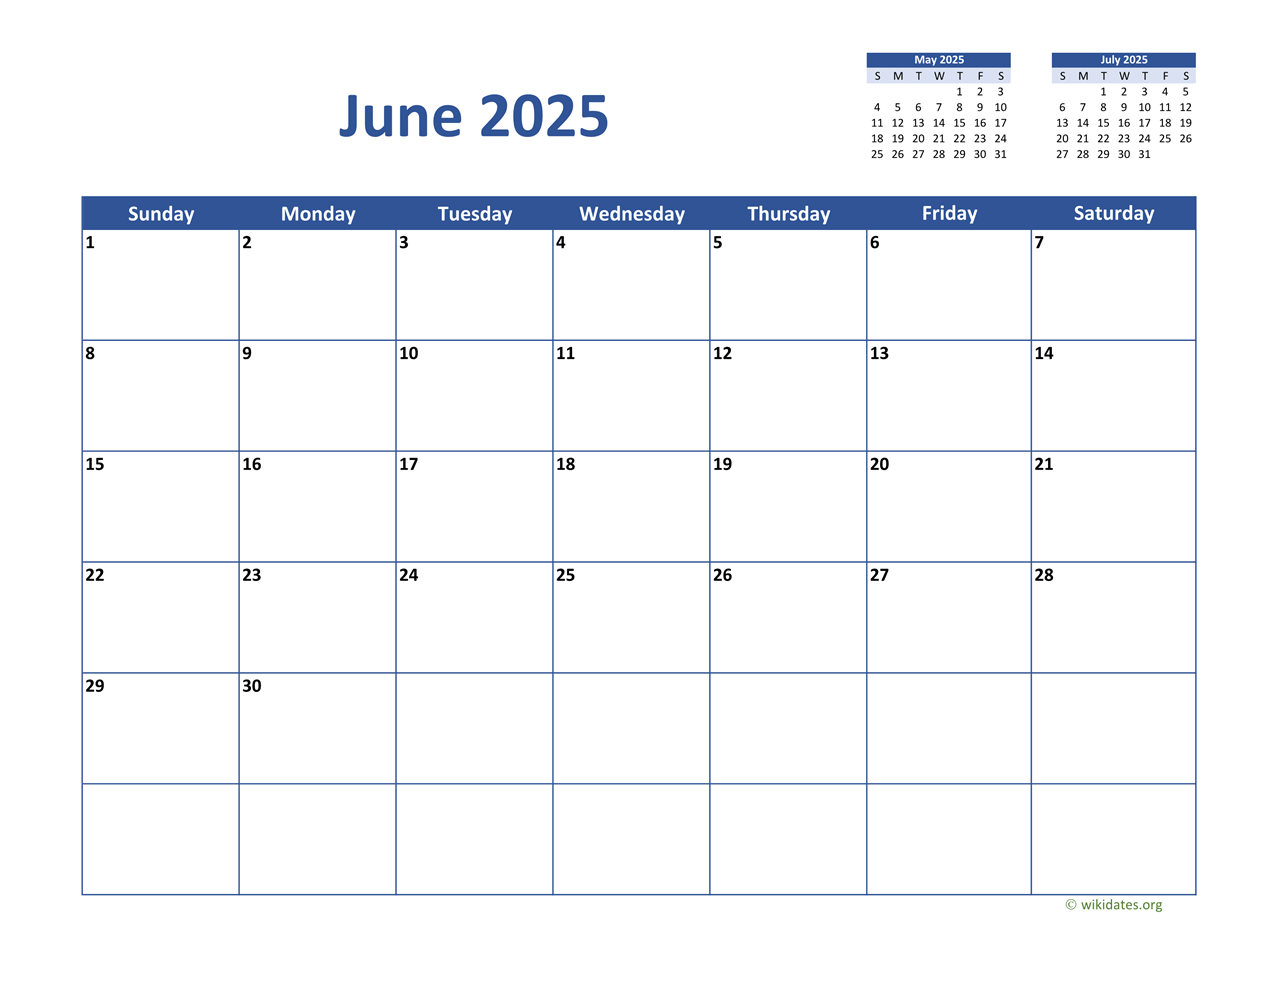 june-2025-calendar-classic-wikidates